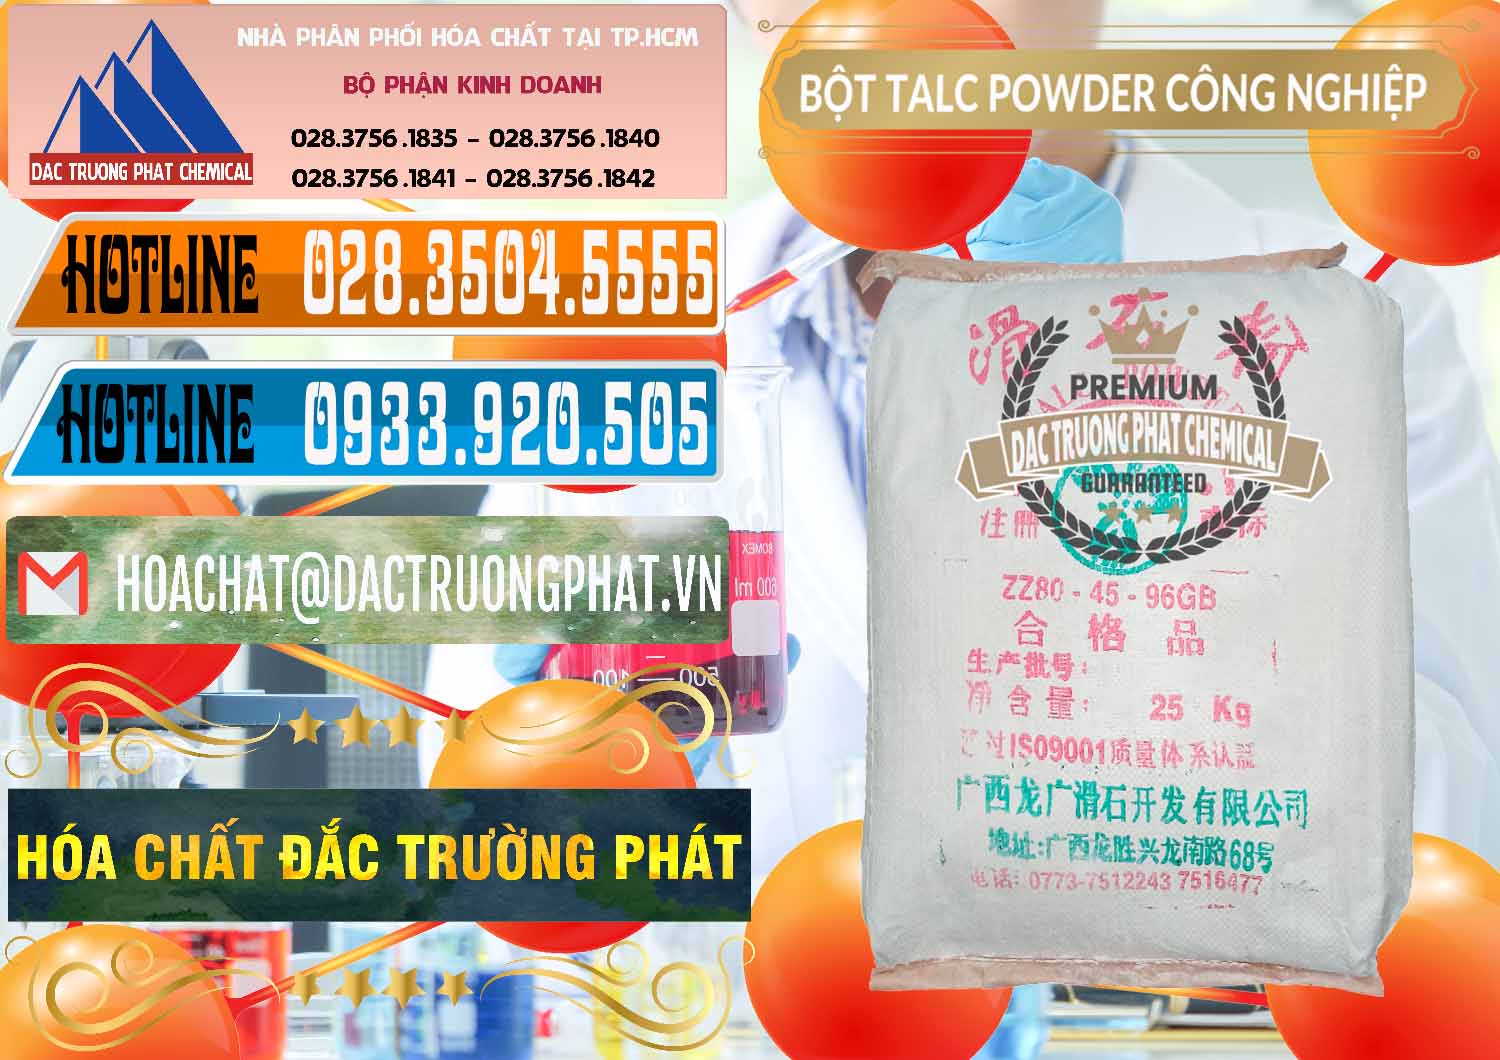 Công ty bán _ cung cấp Bột Talc Powder Công Nghiệp Trung Quốc China - 0037 - Nhà phân phối ( bán ) hóa chất tại TP.HCM - stmp.net